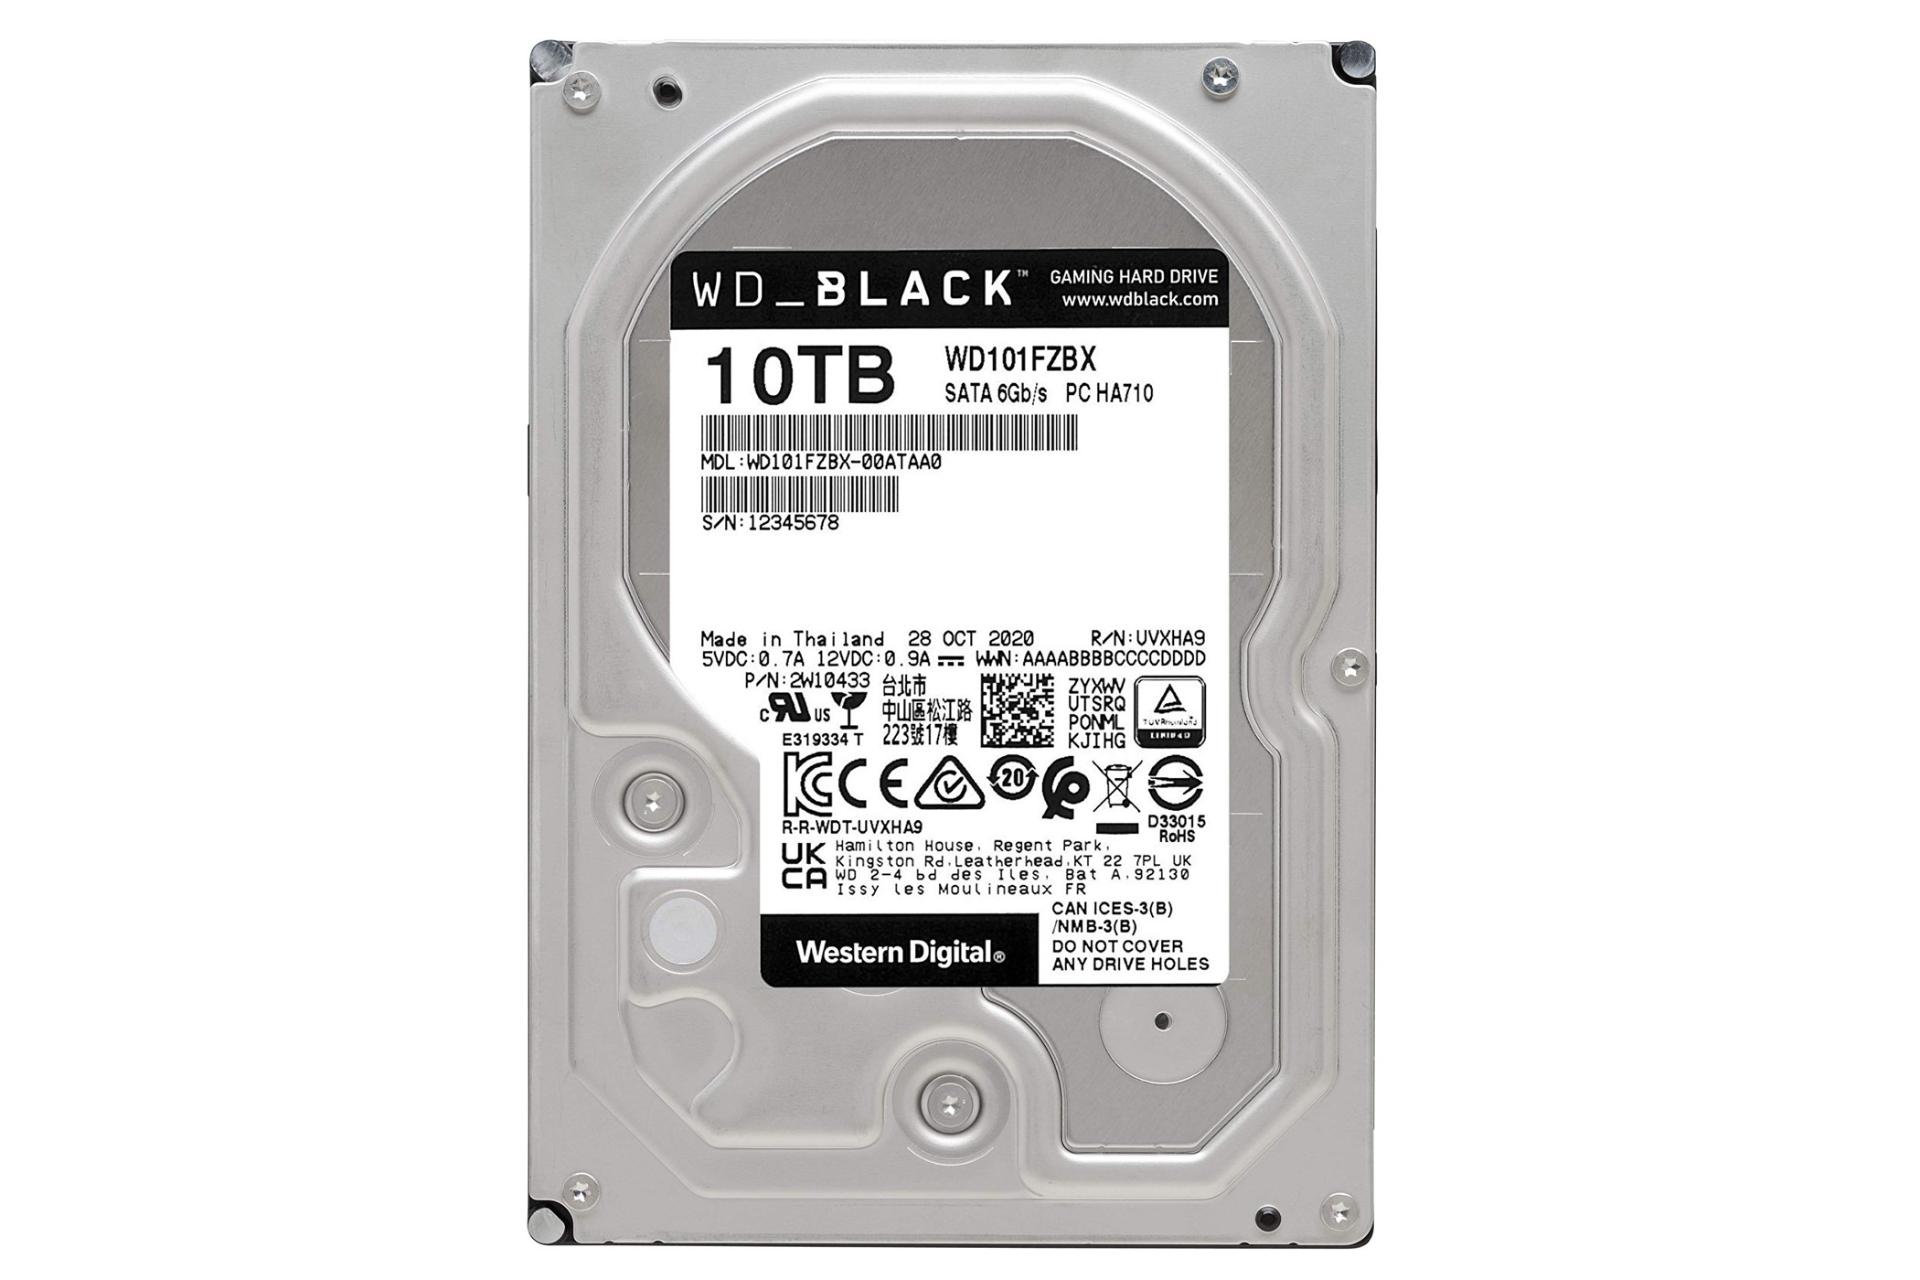 نمای پشت هارد دیسک وسترن دیجیتال Black WD101FZBX ظرفیت 10 ترابایت